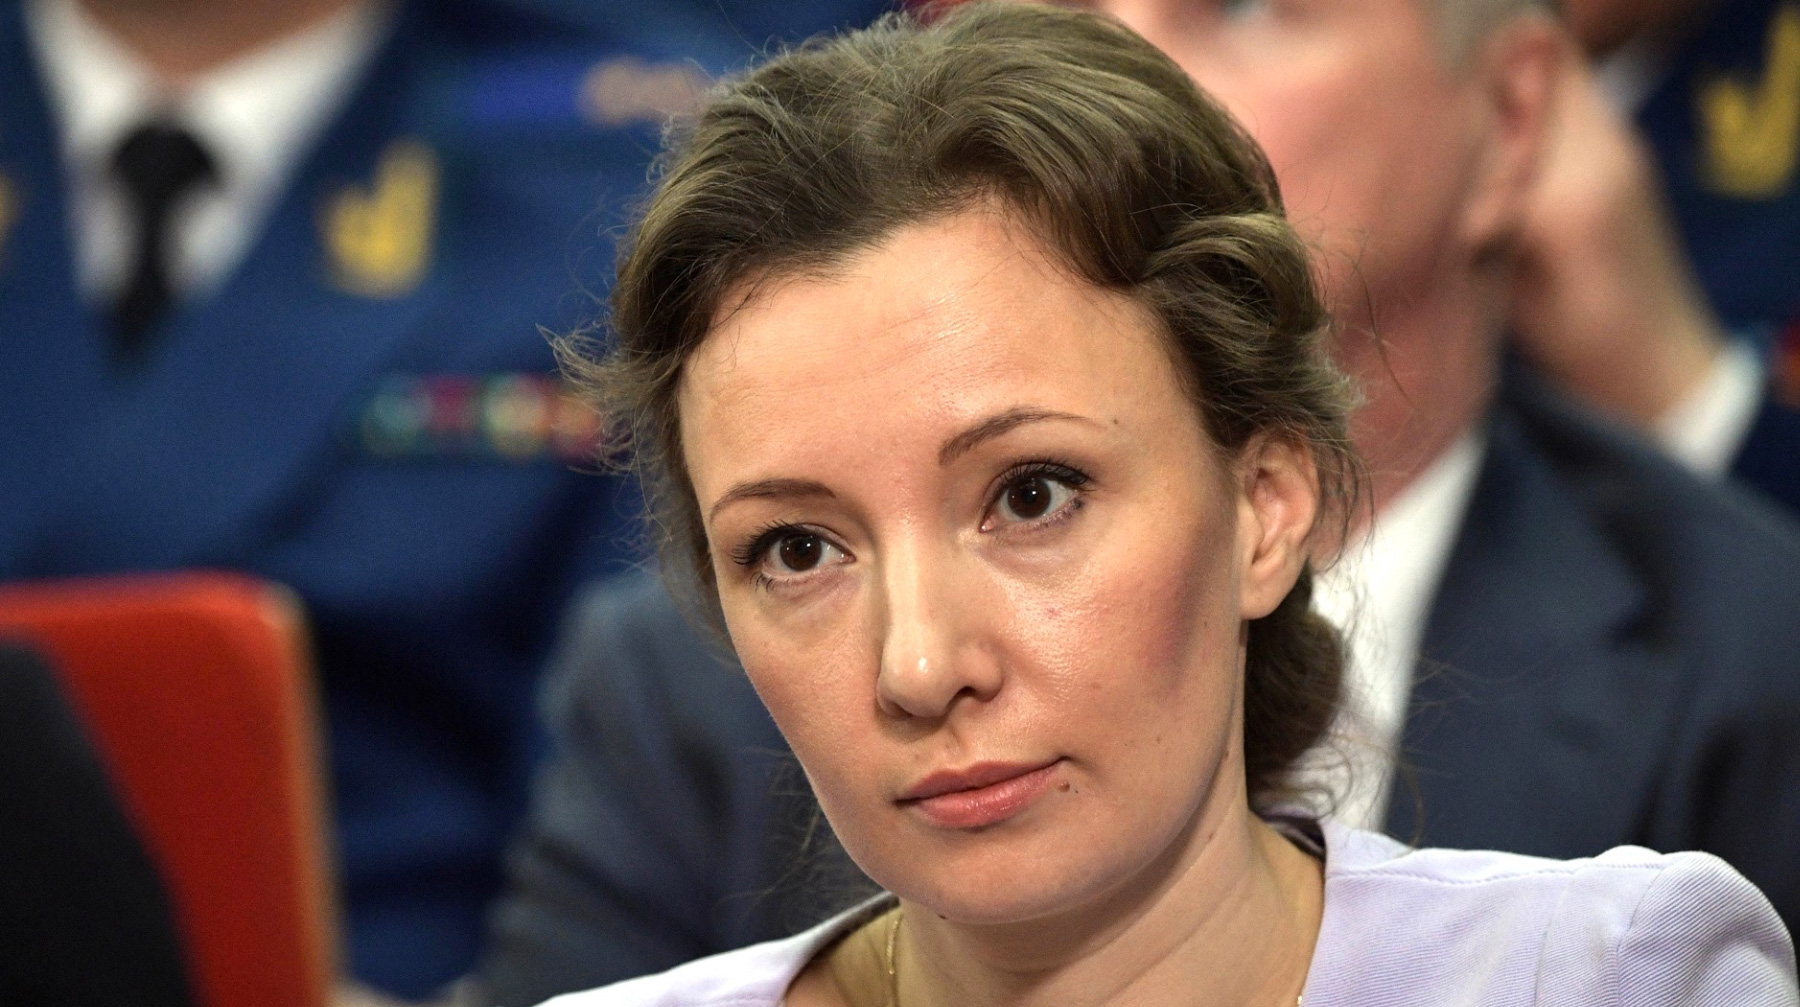 Анна Кузнецова прокомментировала сообщение об услуге, которую предлагали в одной из московских клиник Анна Кузнецова